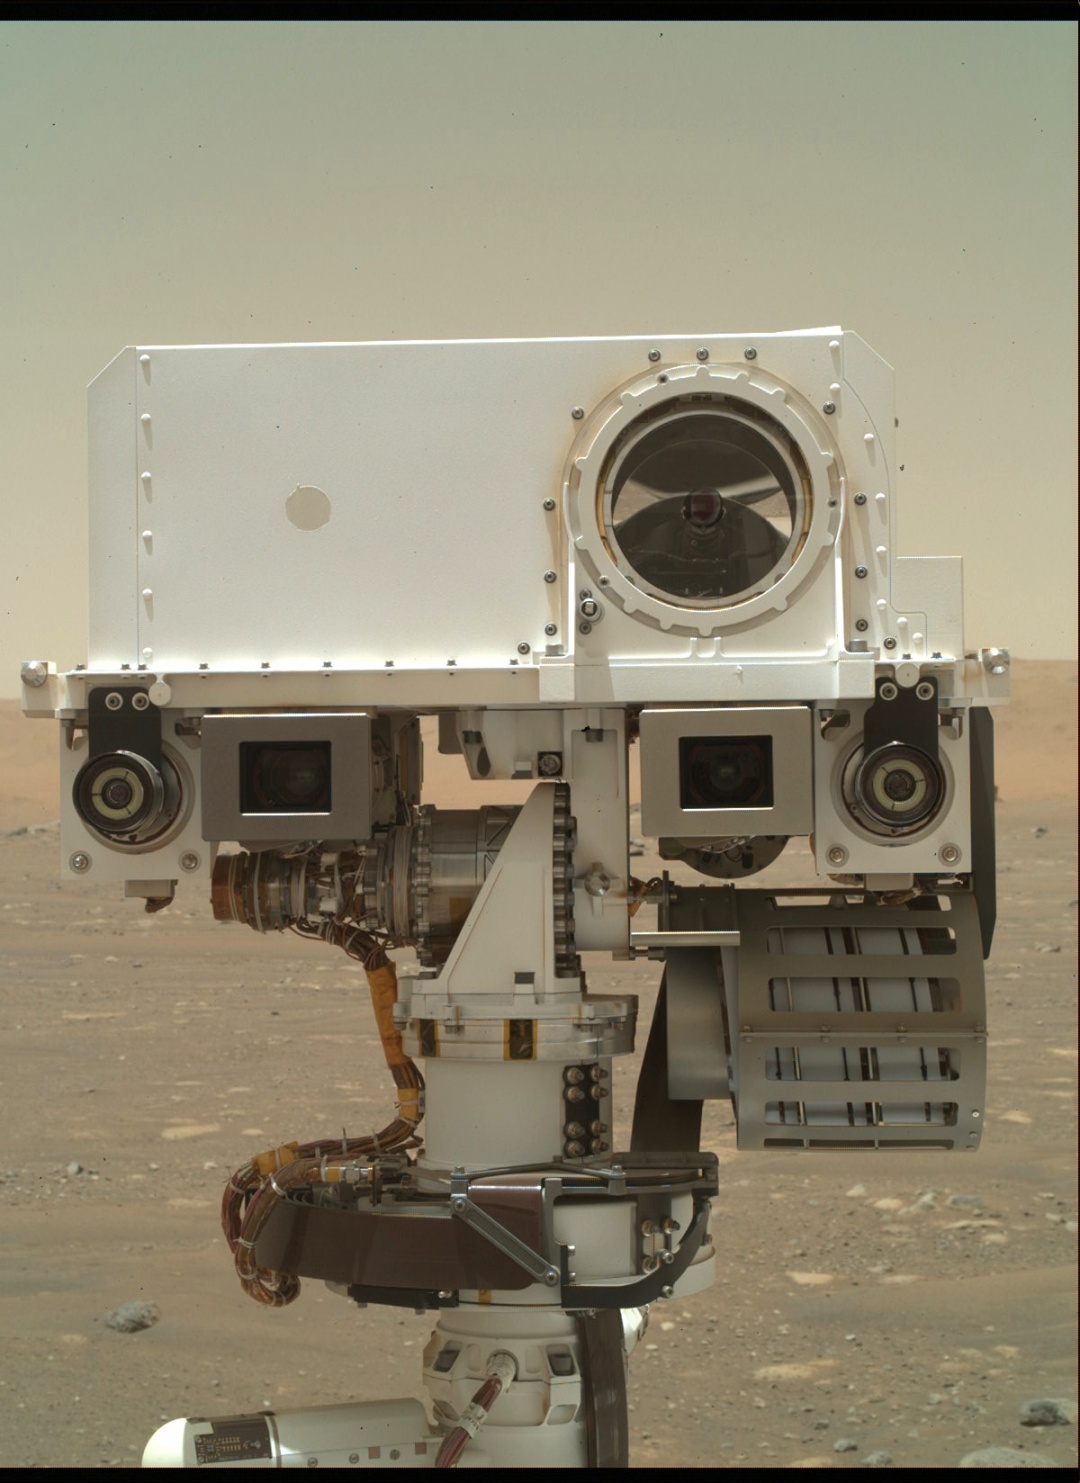 毅力号第一张自拍照出炉!火星直升机同框出镜